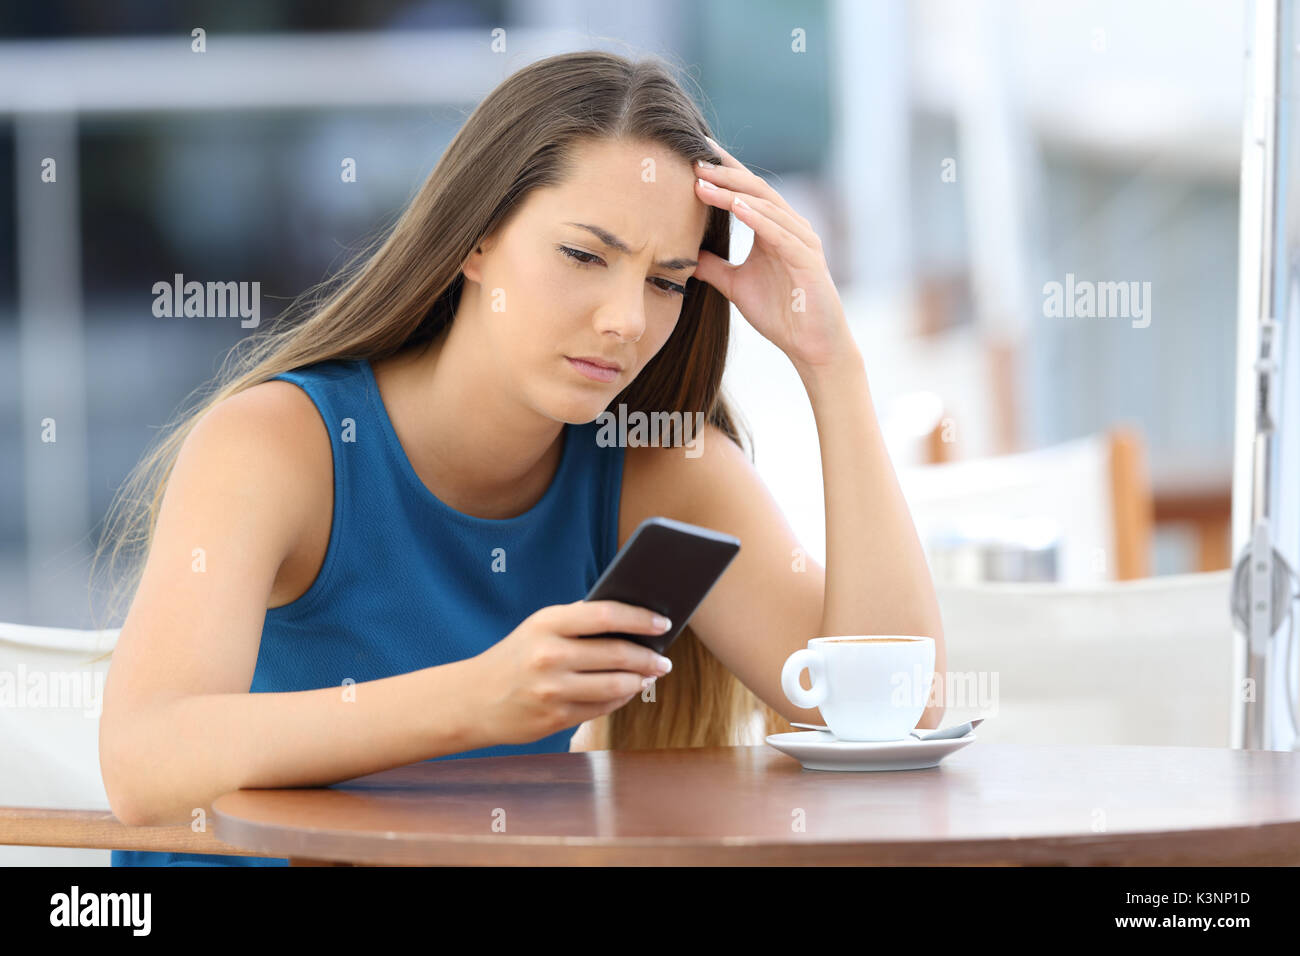 Preocupado única mujer viendo un teléfono móvil y esperando una llamada o mensaje sentado en una cafetería Foto de stock